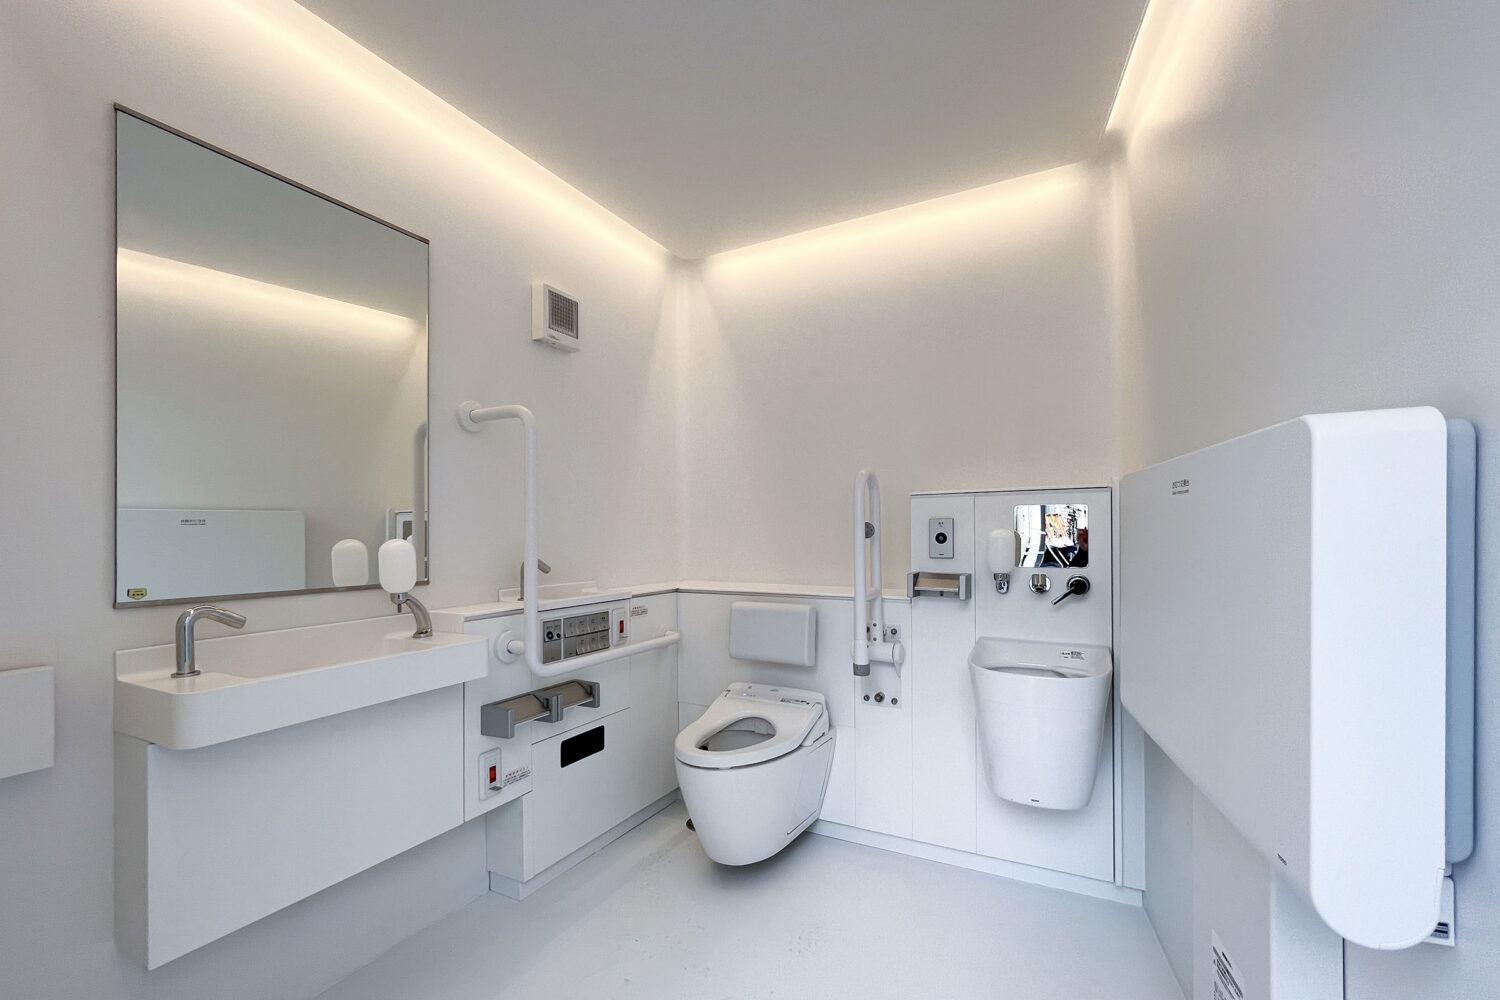 Interior The Tokyo Toilet by Sou Fujimoto, Photo by architecturephoto